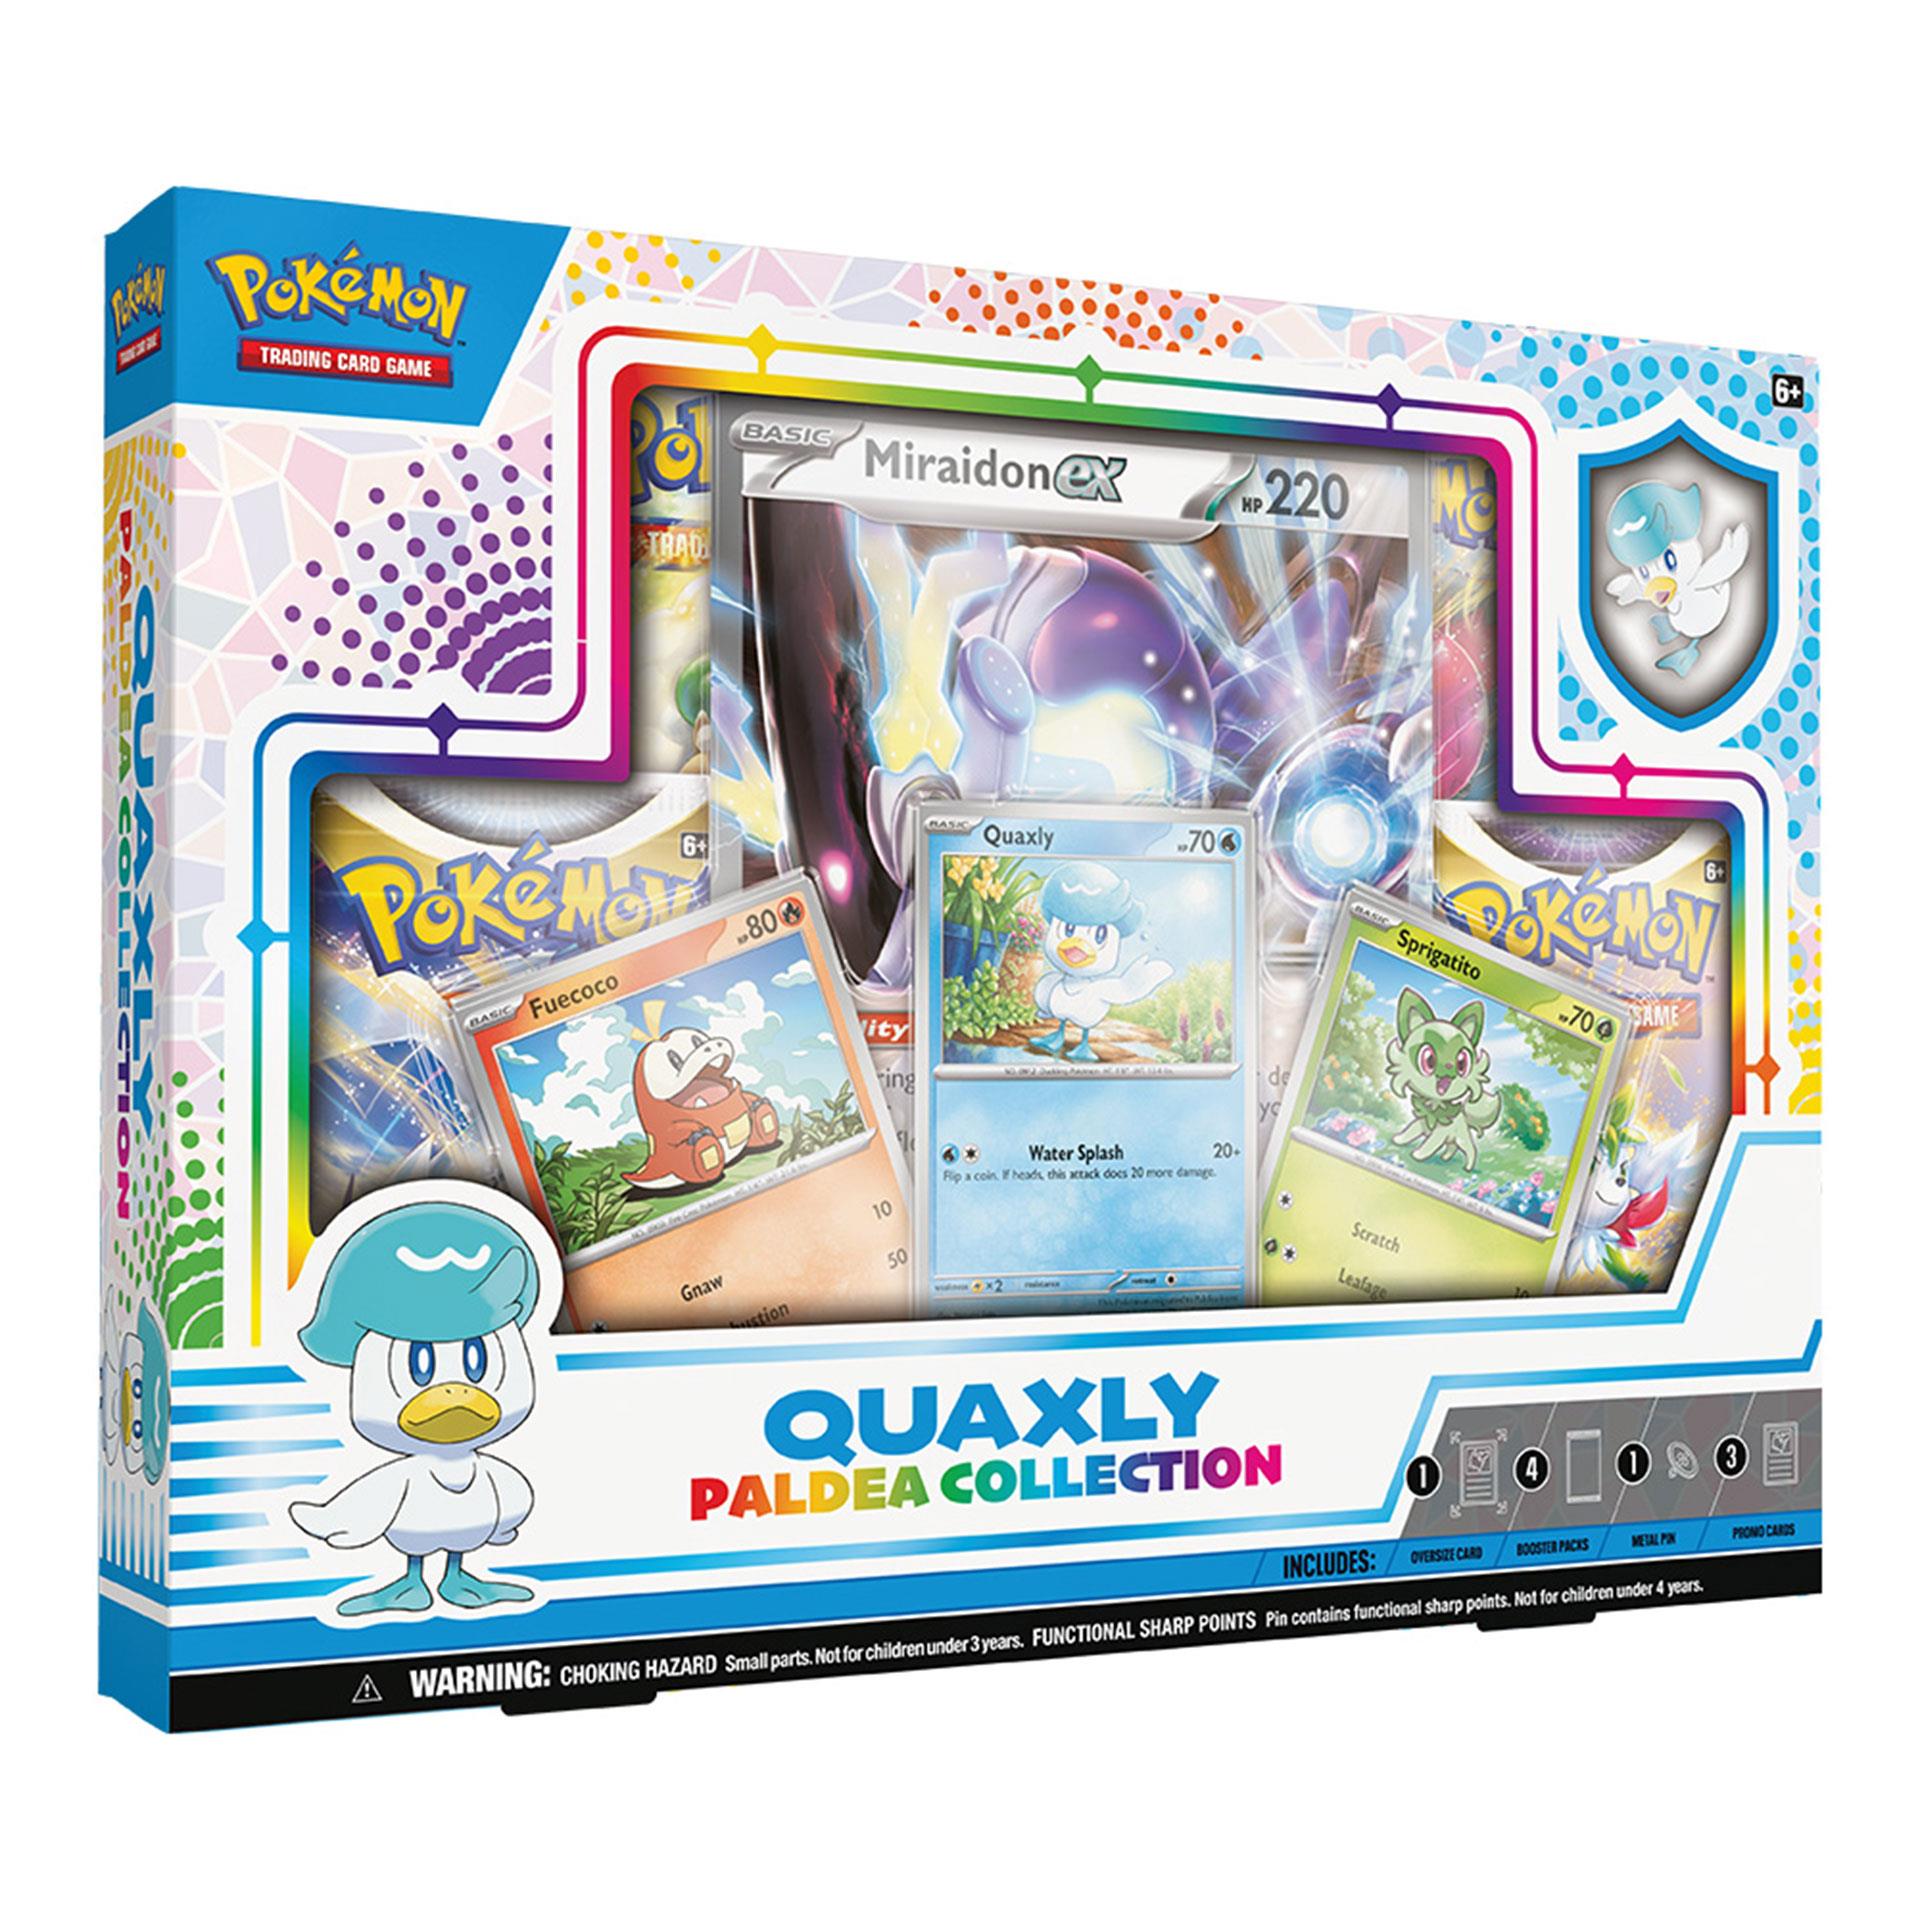 Pokémon Quaxly Paldea – Collection Box